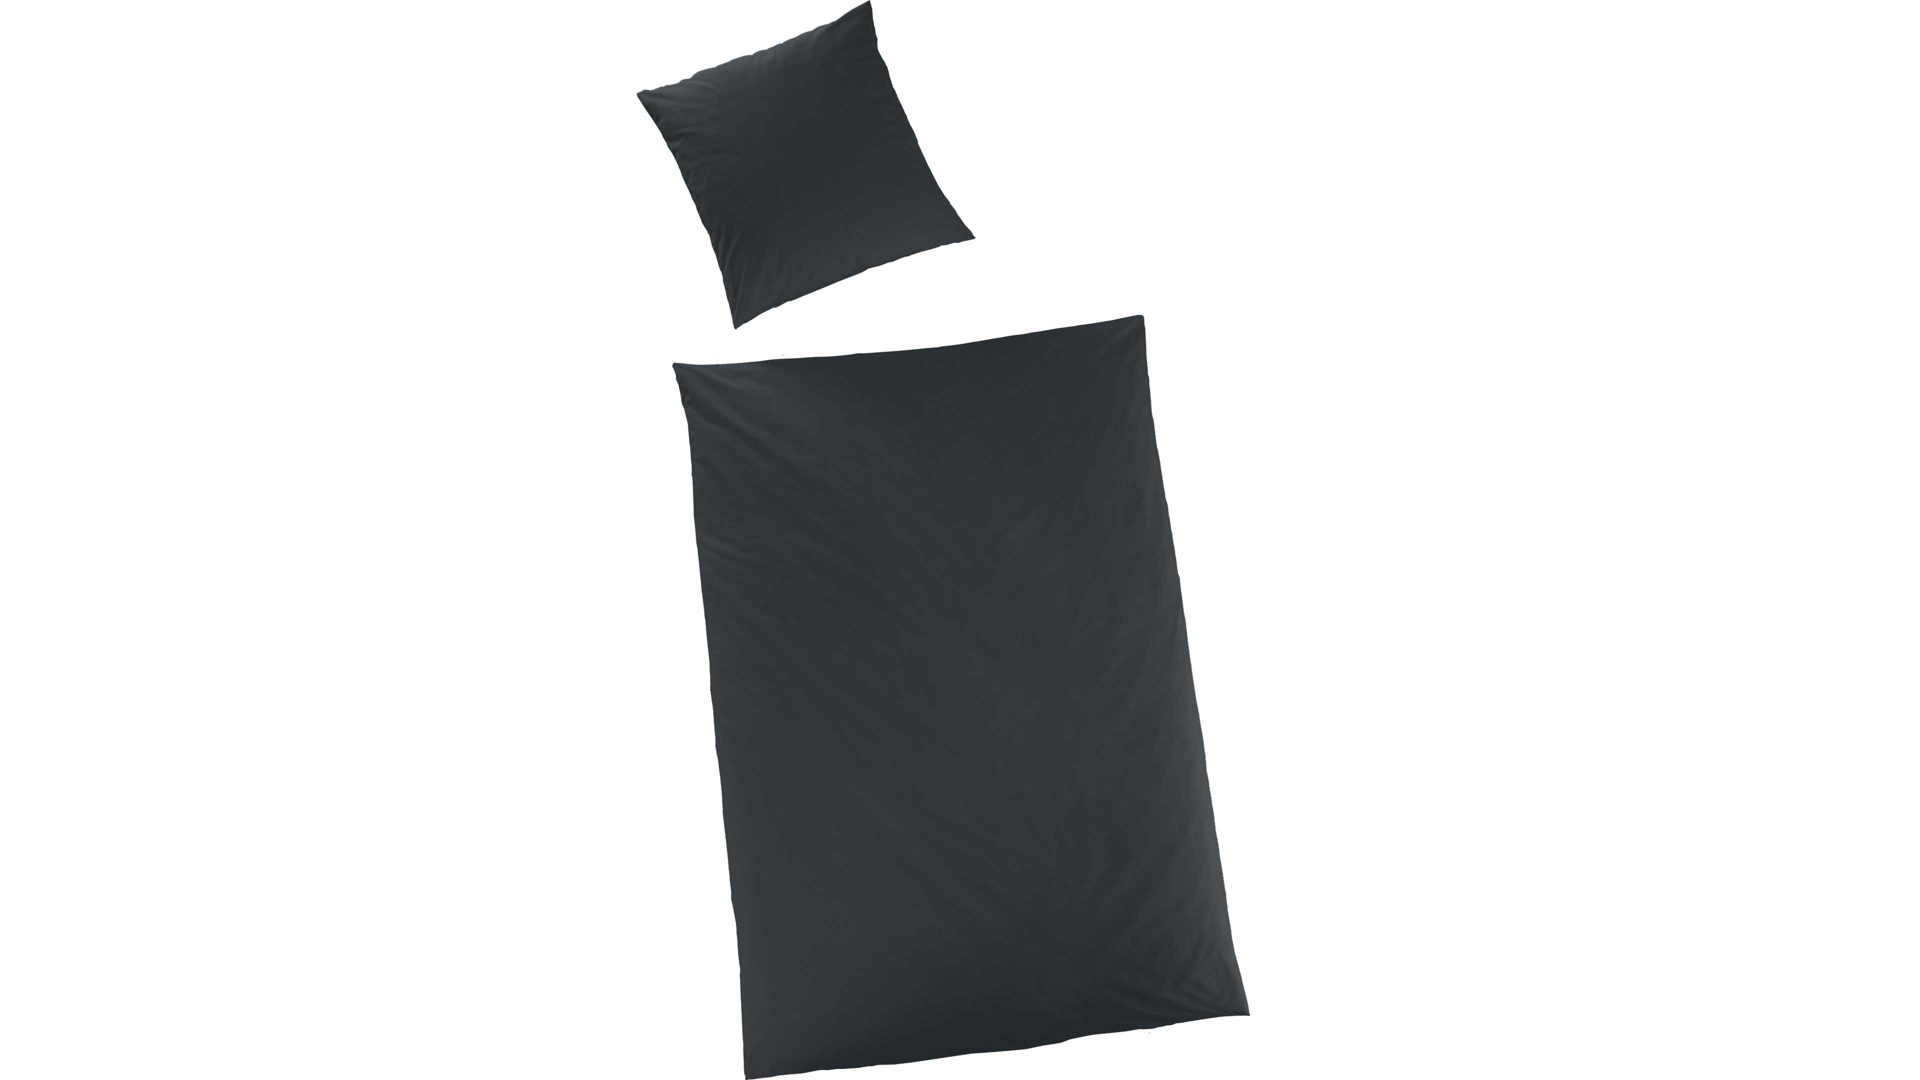 Bettwäsche-Set H.g. hahn haustextilien aus Stoff in Schwarz HAHN Luxus-Satin-Bettwäsche Sempre schwarzer Baumwollsatin – zweiteilig, ca. 155 x 200 cm